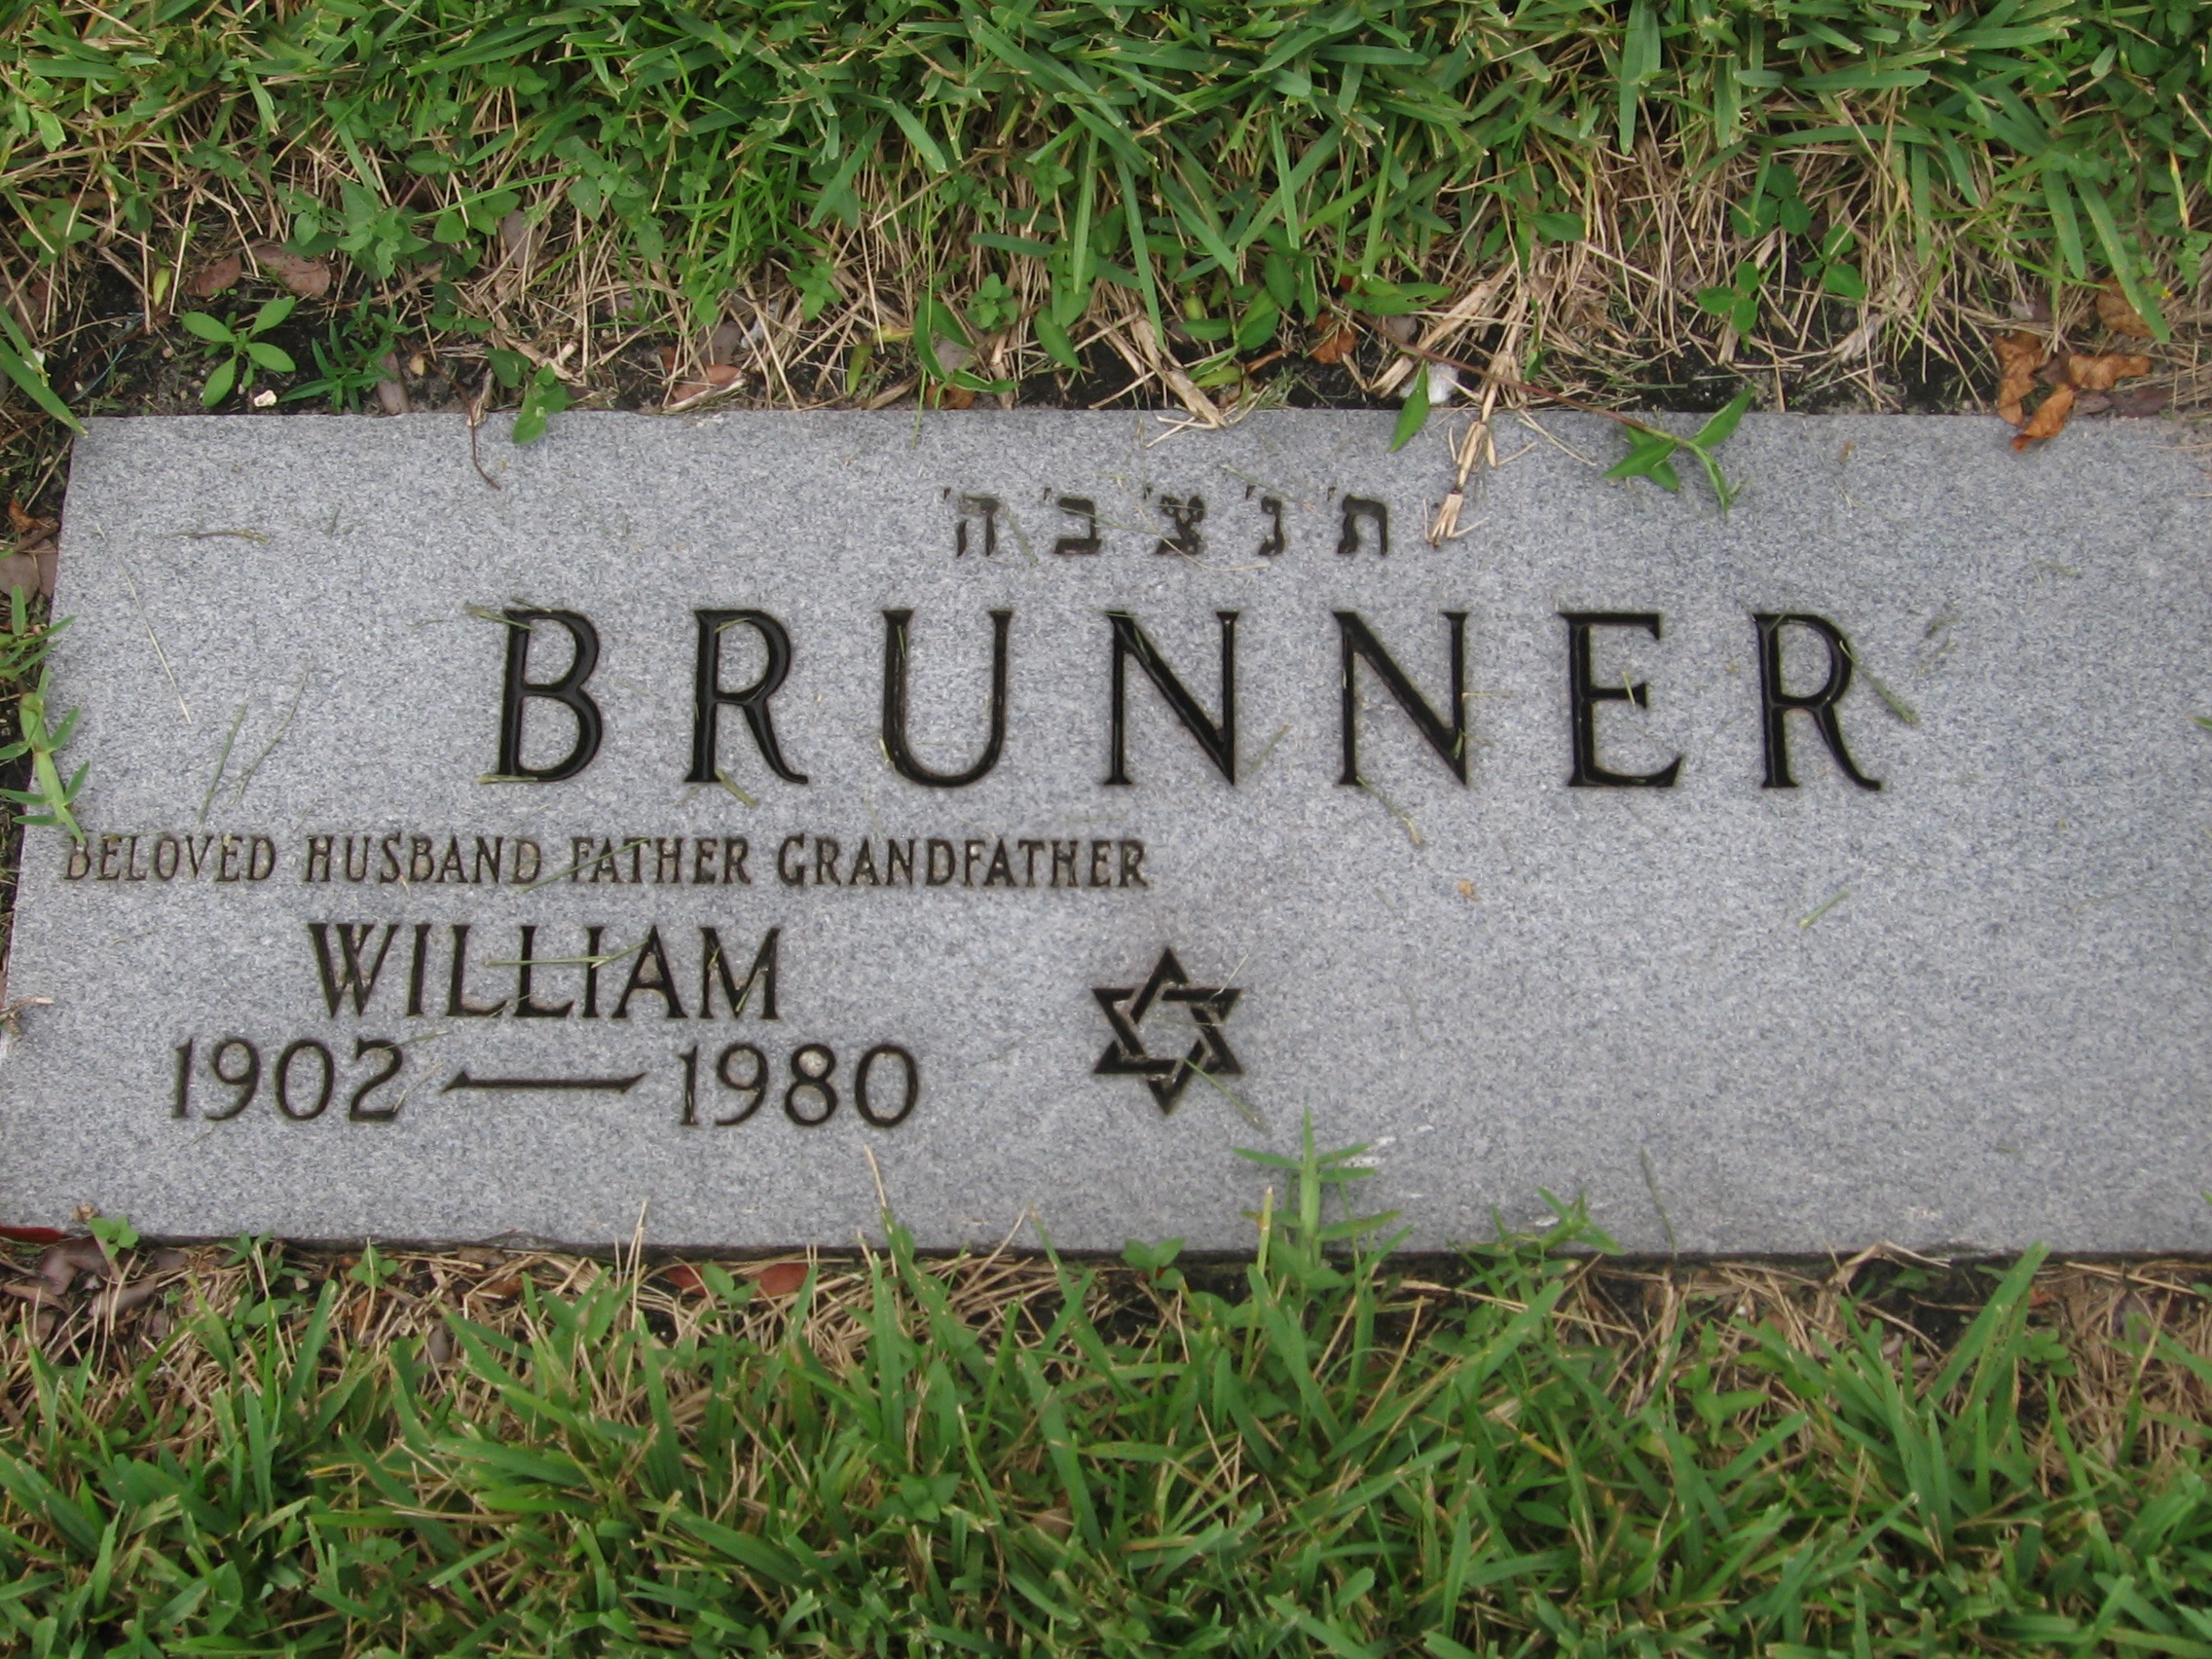 William Brunner